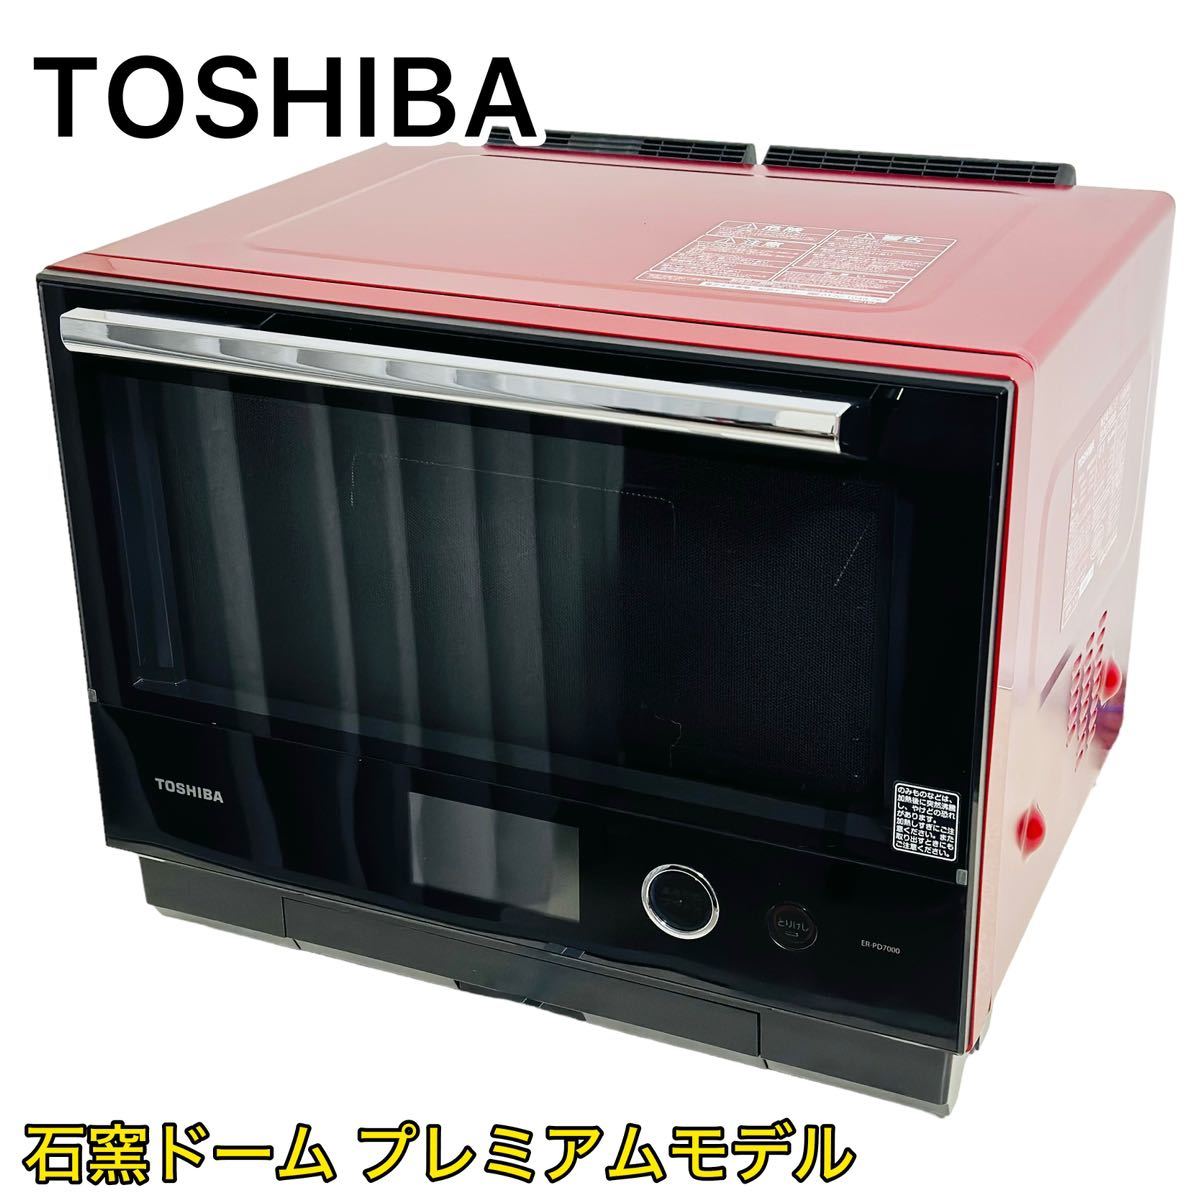 おトク】 【最上位モデル】TOSHIBA 東芝 過熱水蒸気オーブンレンジ